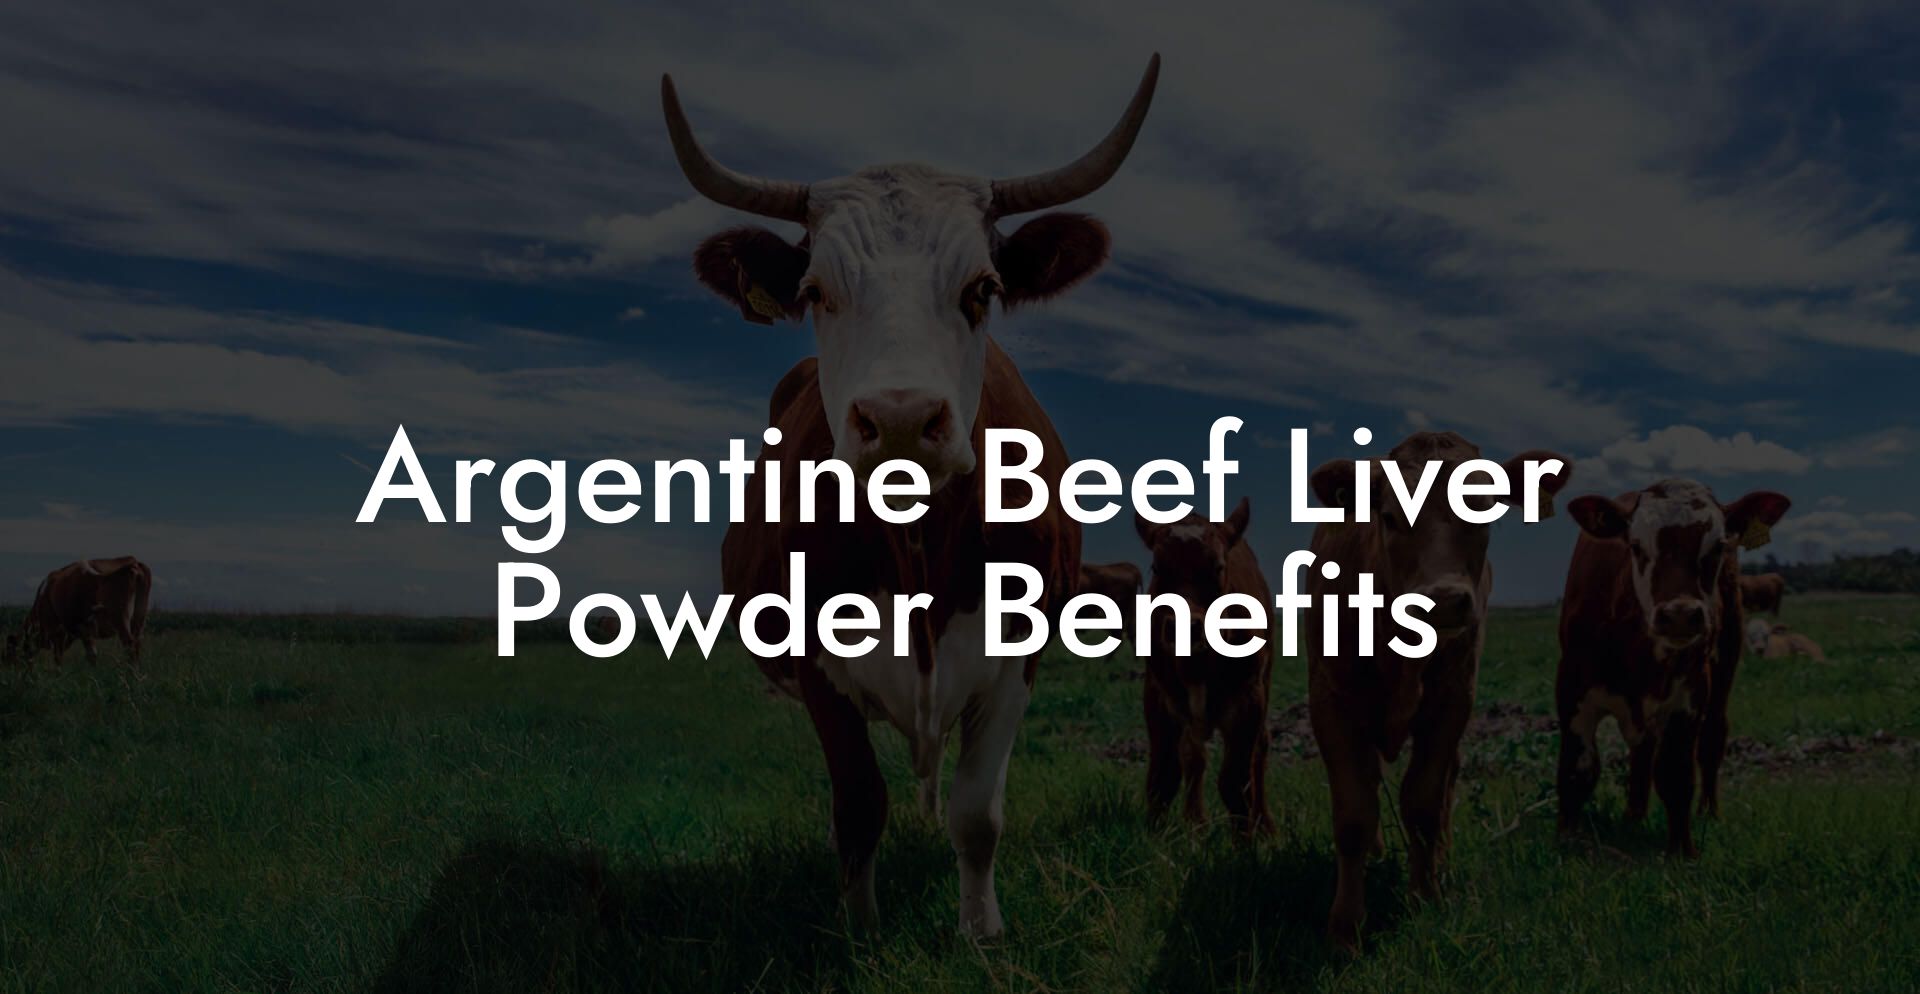 Argentine Beef Liver Powder Benefits